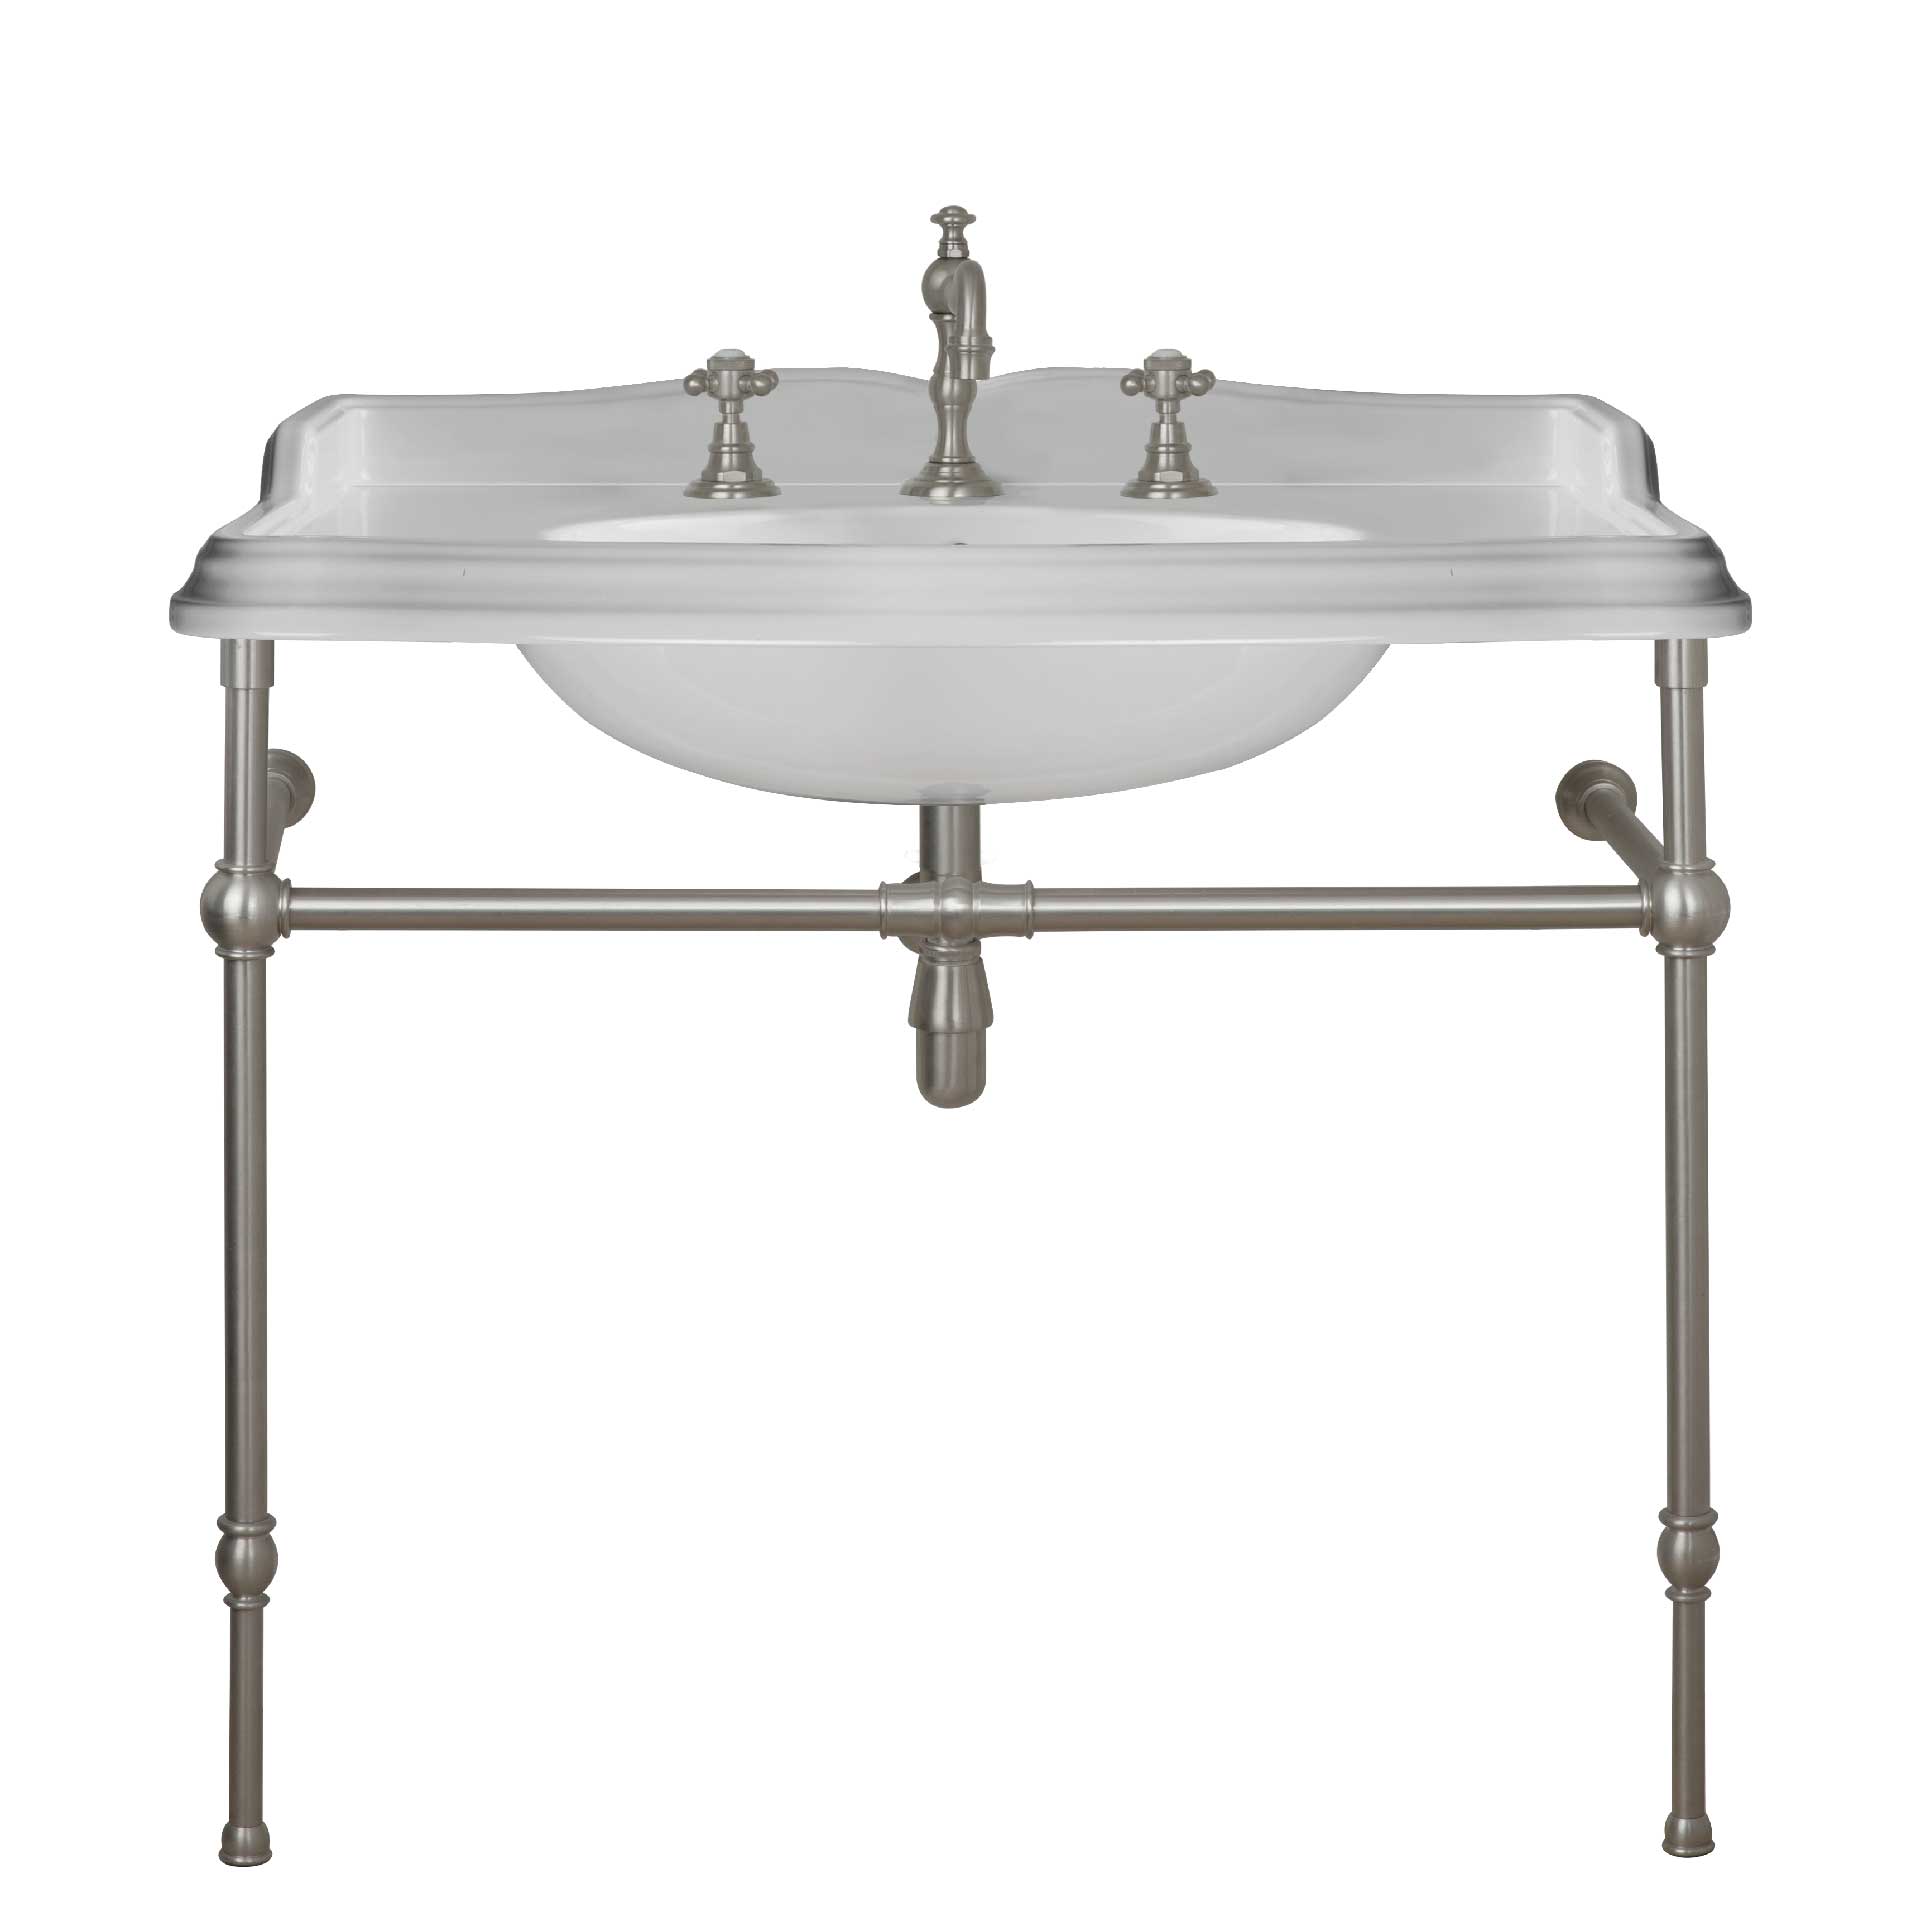 MS03-105-pietement-laiton Victorian washbasin on brass washstand, L. 105cm